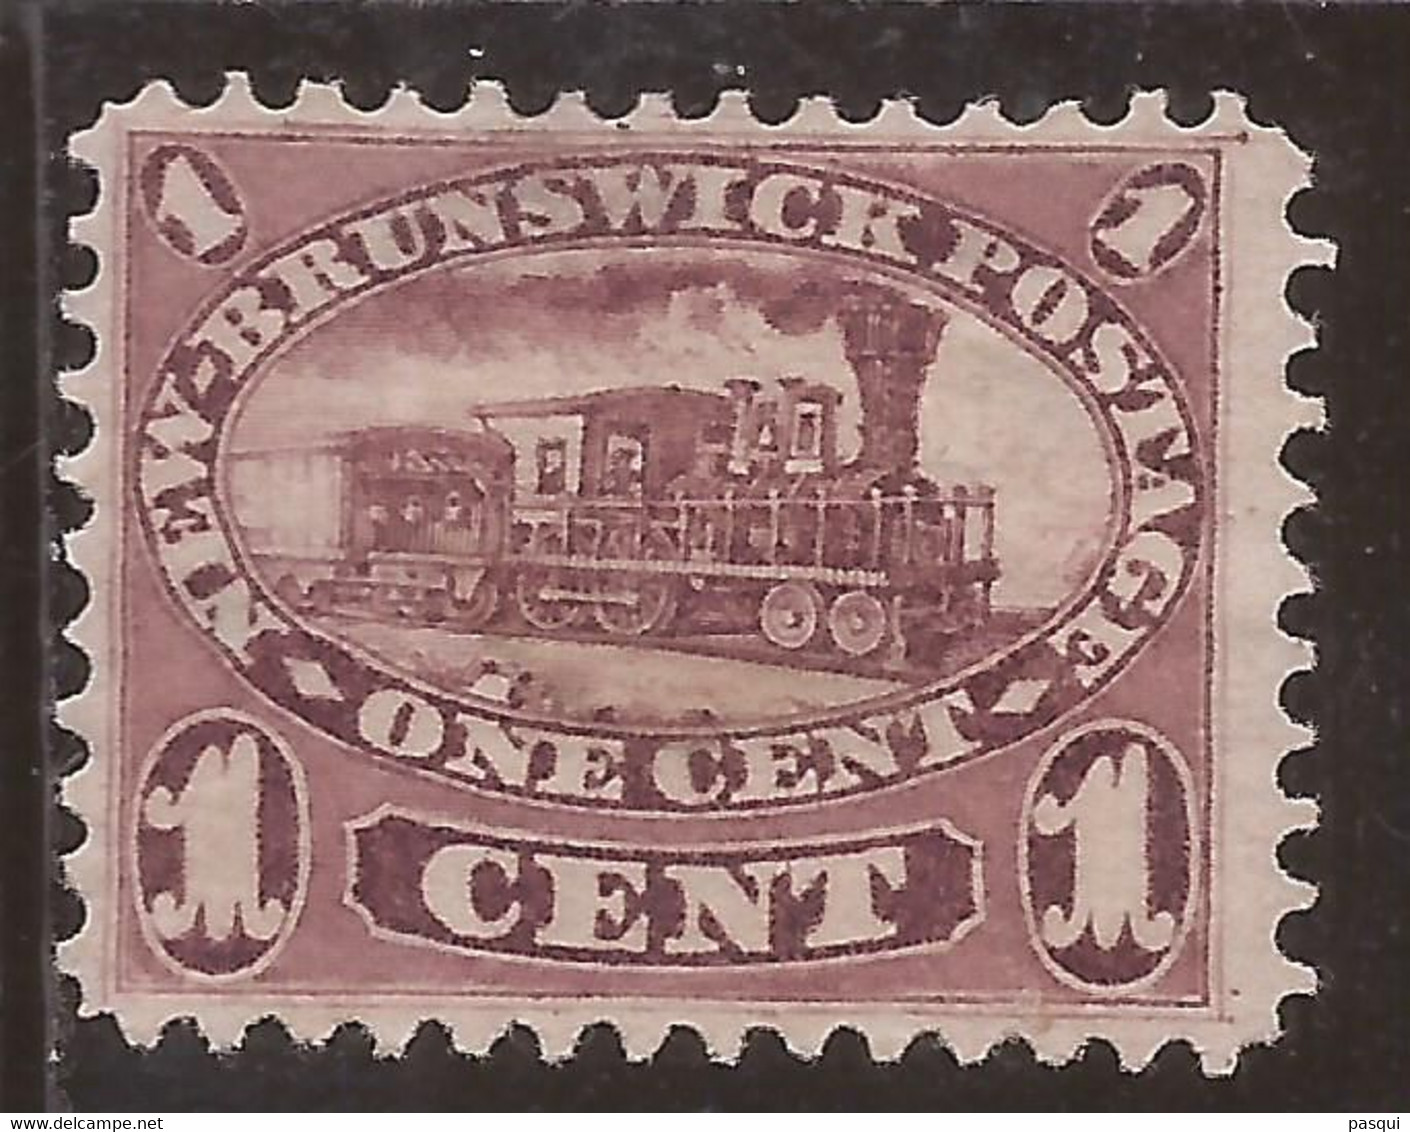 Nuevo Brunswick - Fx. 3853 - Yv. 4 - 1 C. Marrón Rojizo - Locomotora - 1860 - (*) - Nuevos